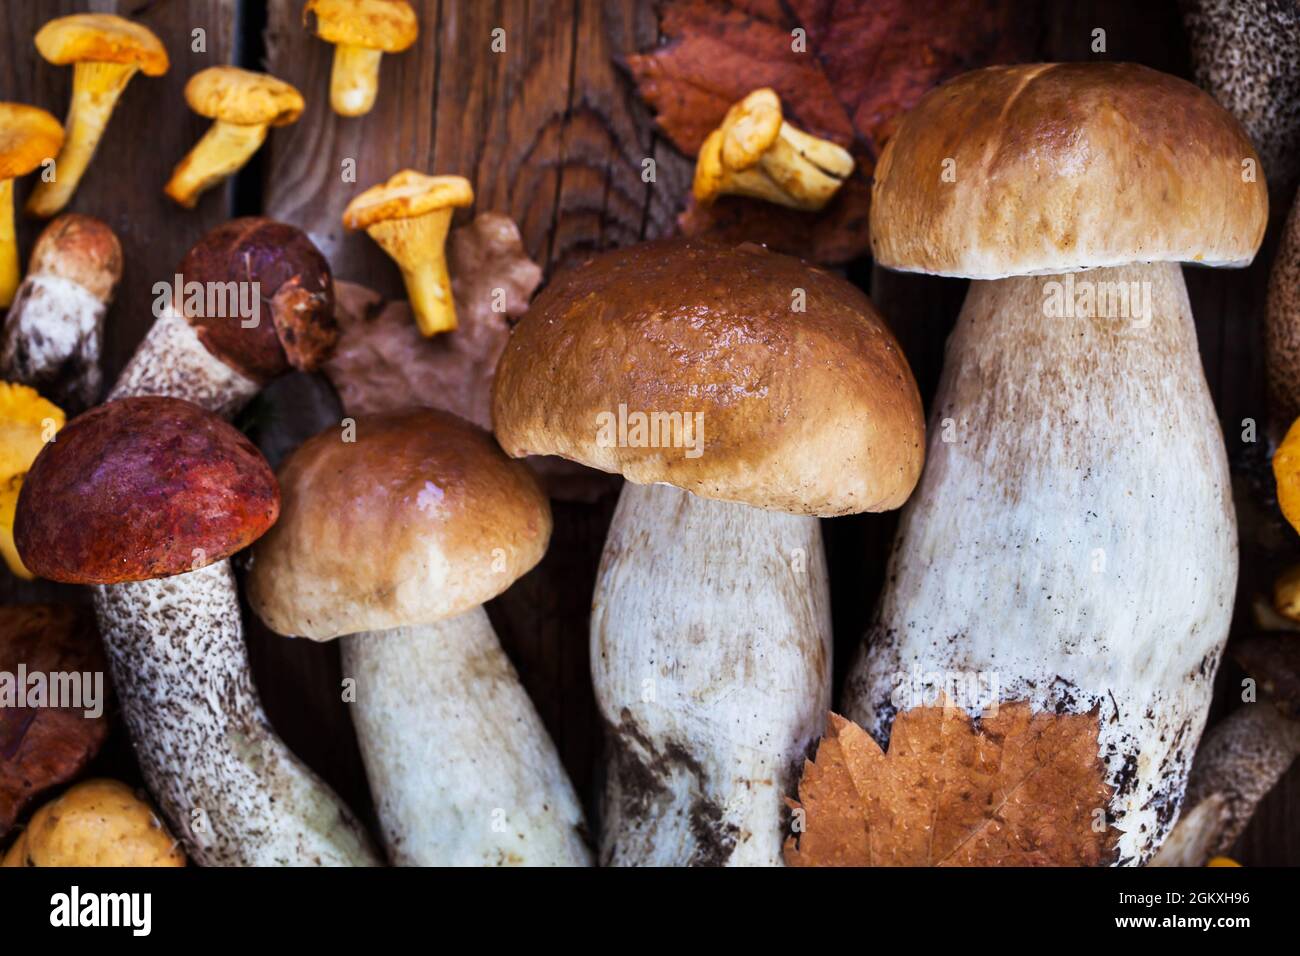 Funghi selvatici freschi non cotti (chanterelle, boleto e porcini) su tavola di legno, vista dall'alto Foto Stock